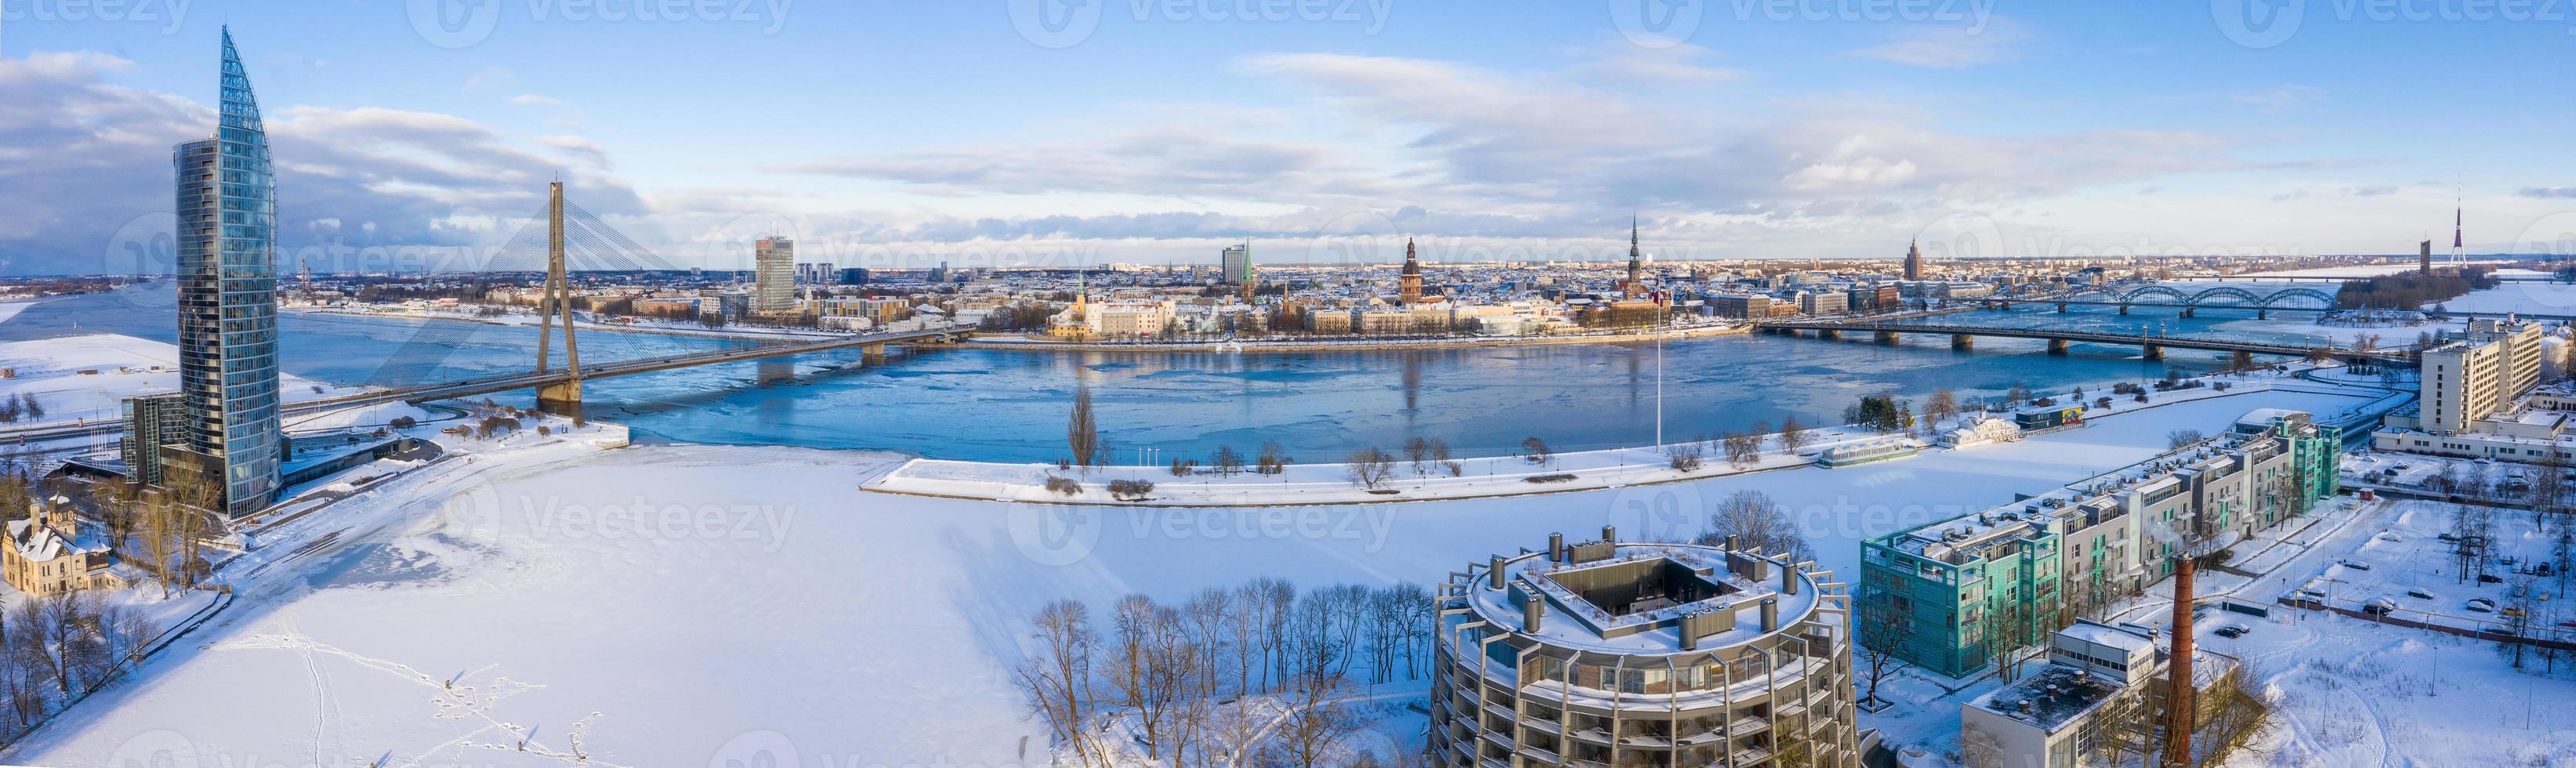 belle vue panoramique sur la ville de riga, lettonie. vieille ville au bord de la rivière Daugava. photo